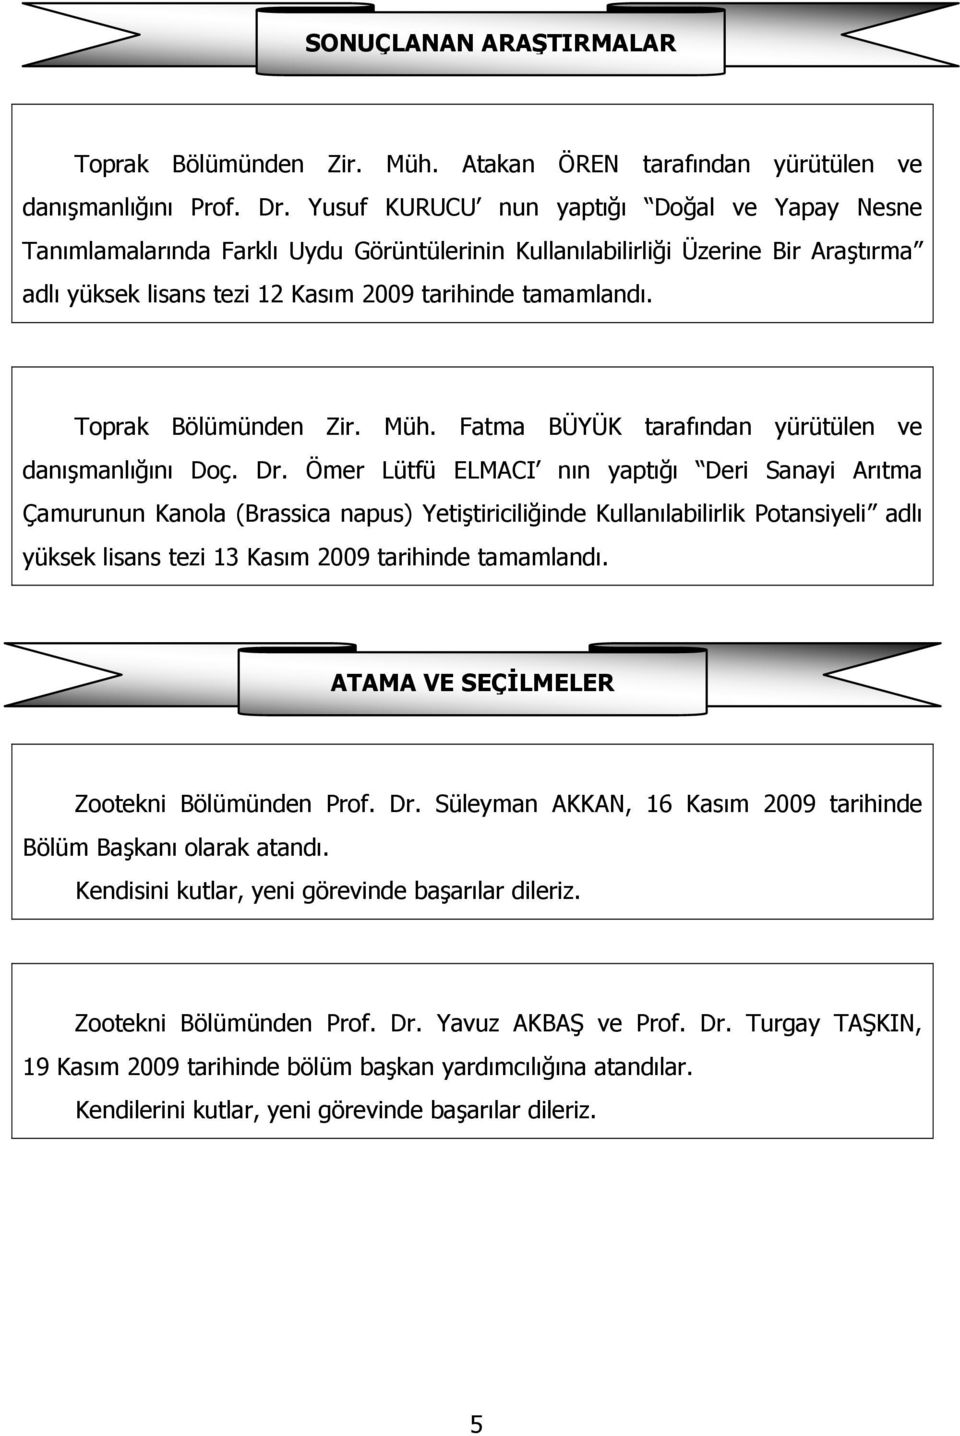 Toprak Bölümünden Zir. Müh. Fatma BÜYÜK tarafından yürütülen ve danışmanlığını Doç. Dr.